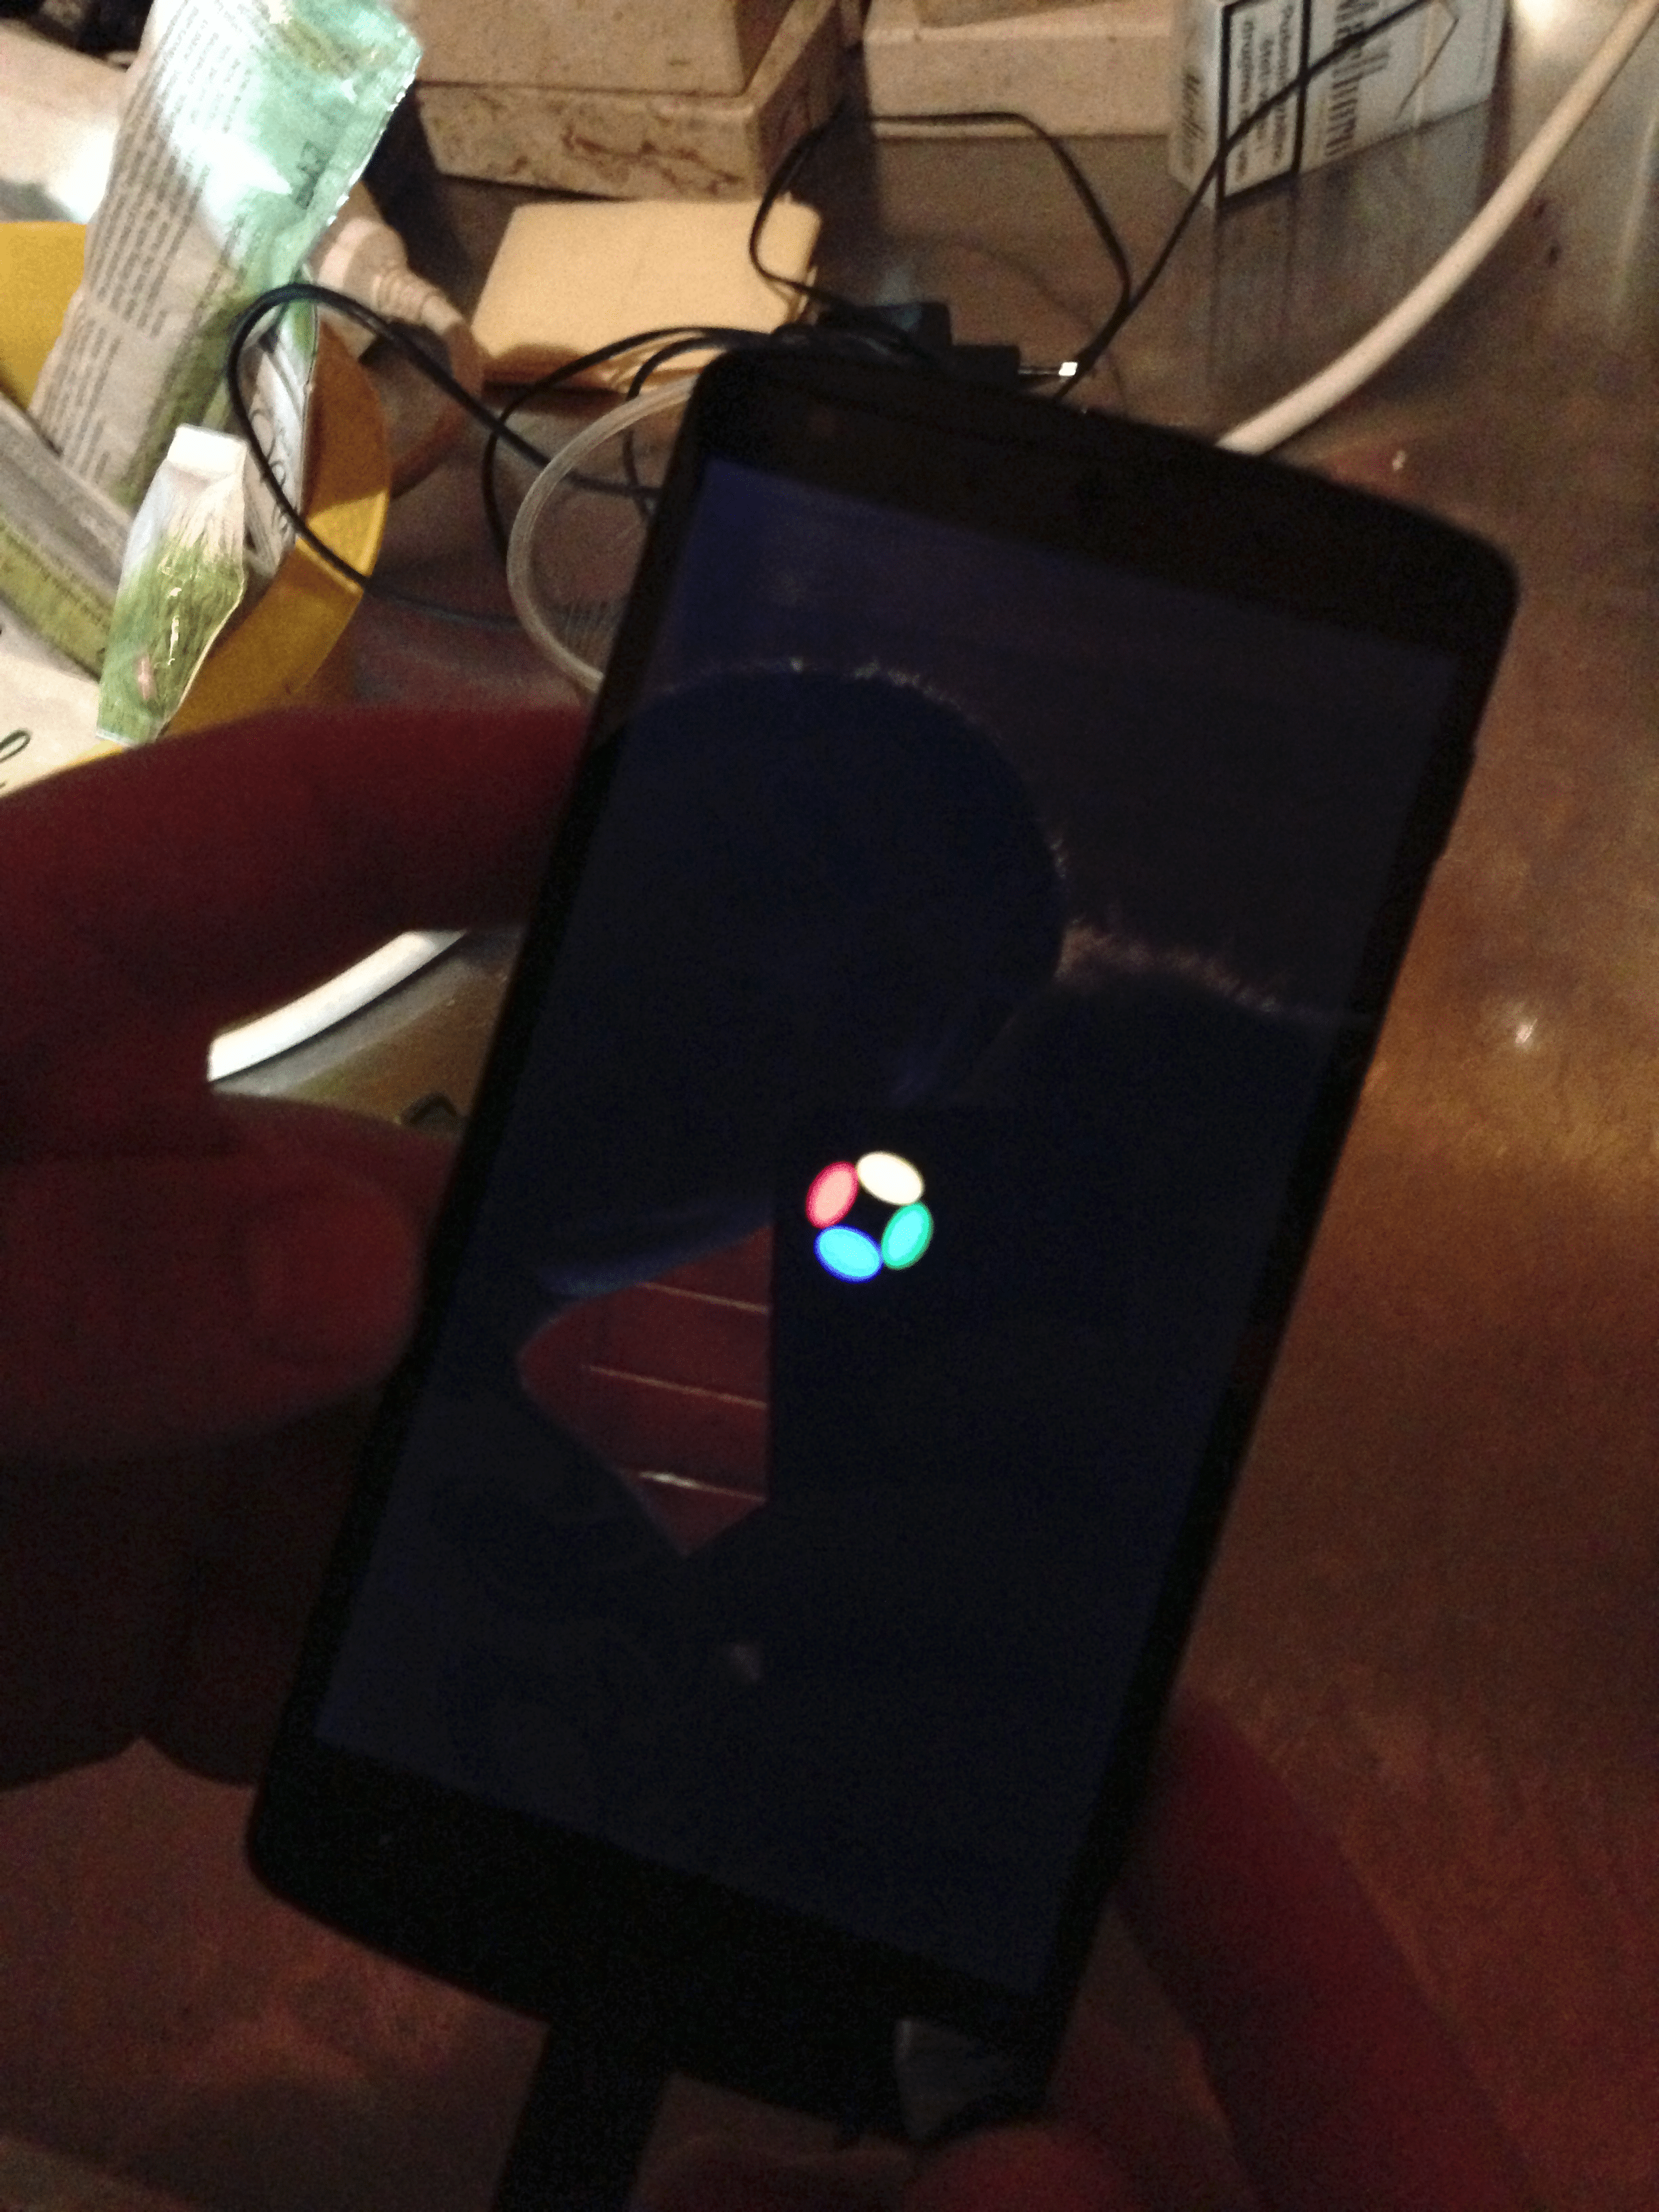 Le Nexus 5 en fuite dans un bar !